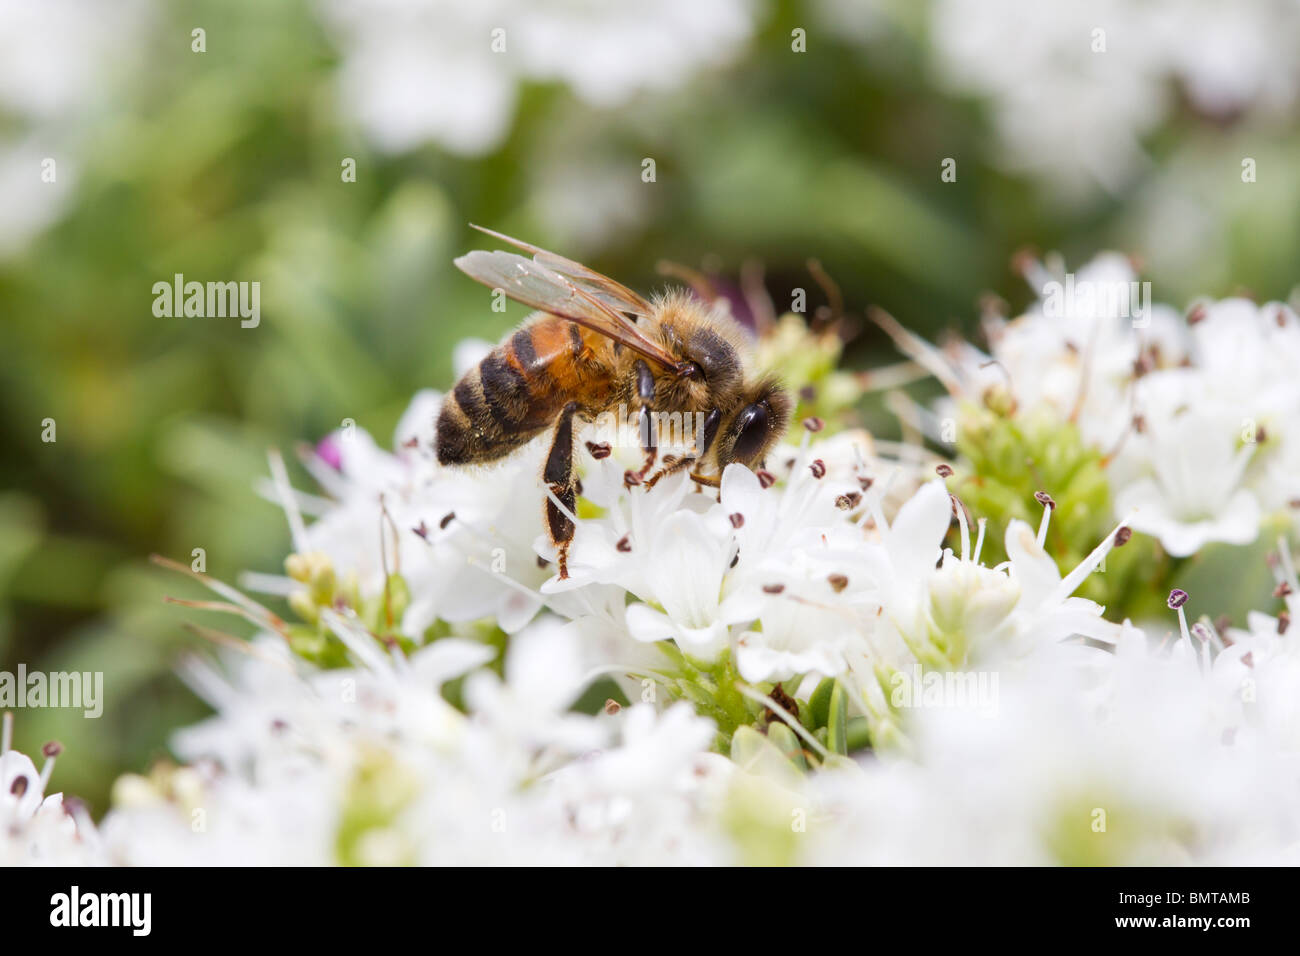 Honey Bee nectaring Apis mellifera on Hebe bush, Great Malvern, Worcestershire, UK. Stock Photo